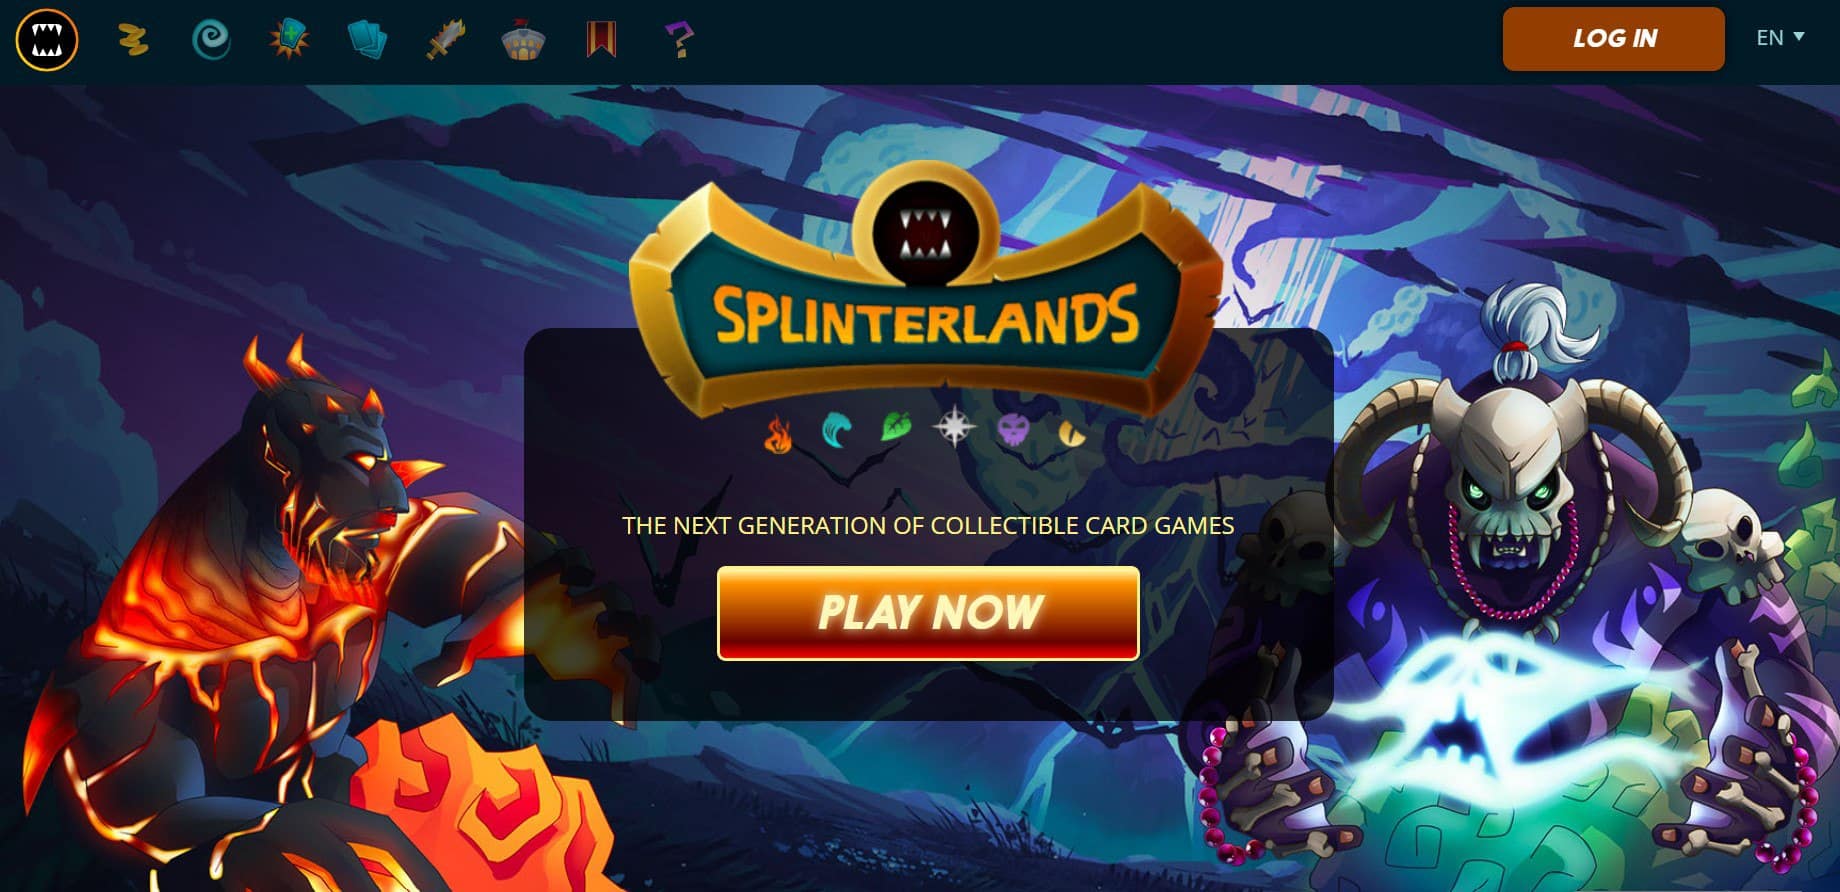 NFT Gaming Platforms Splinterlands